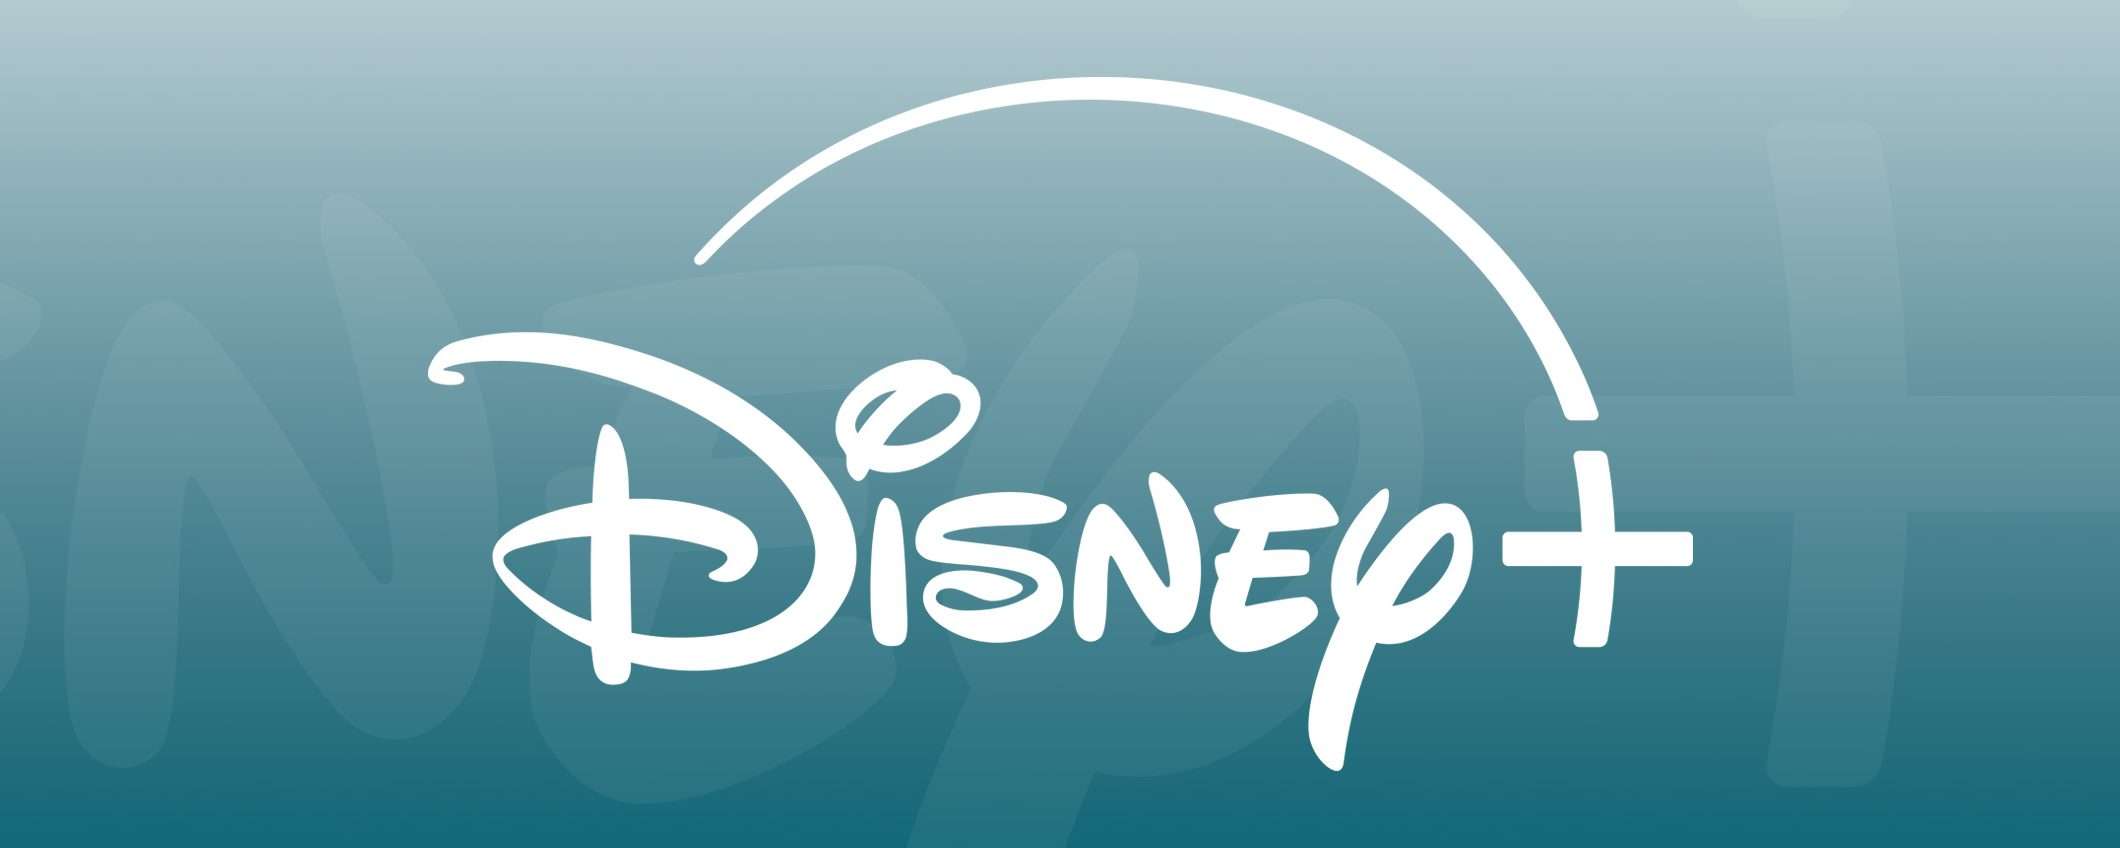 Disney+ potrebbe introdurre i canali tematici